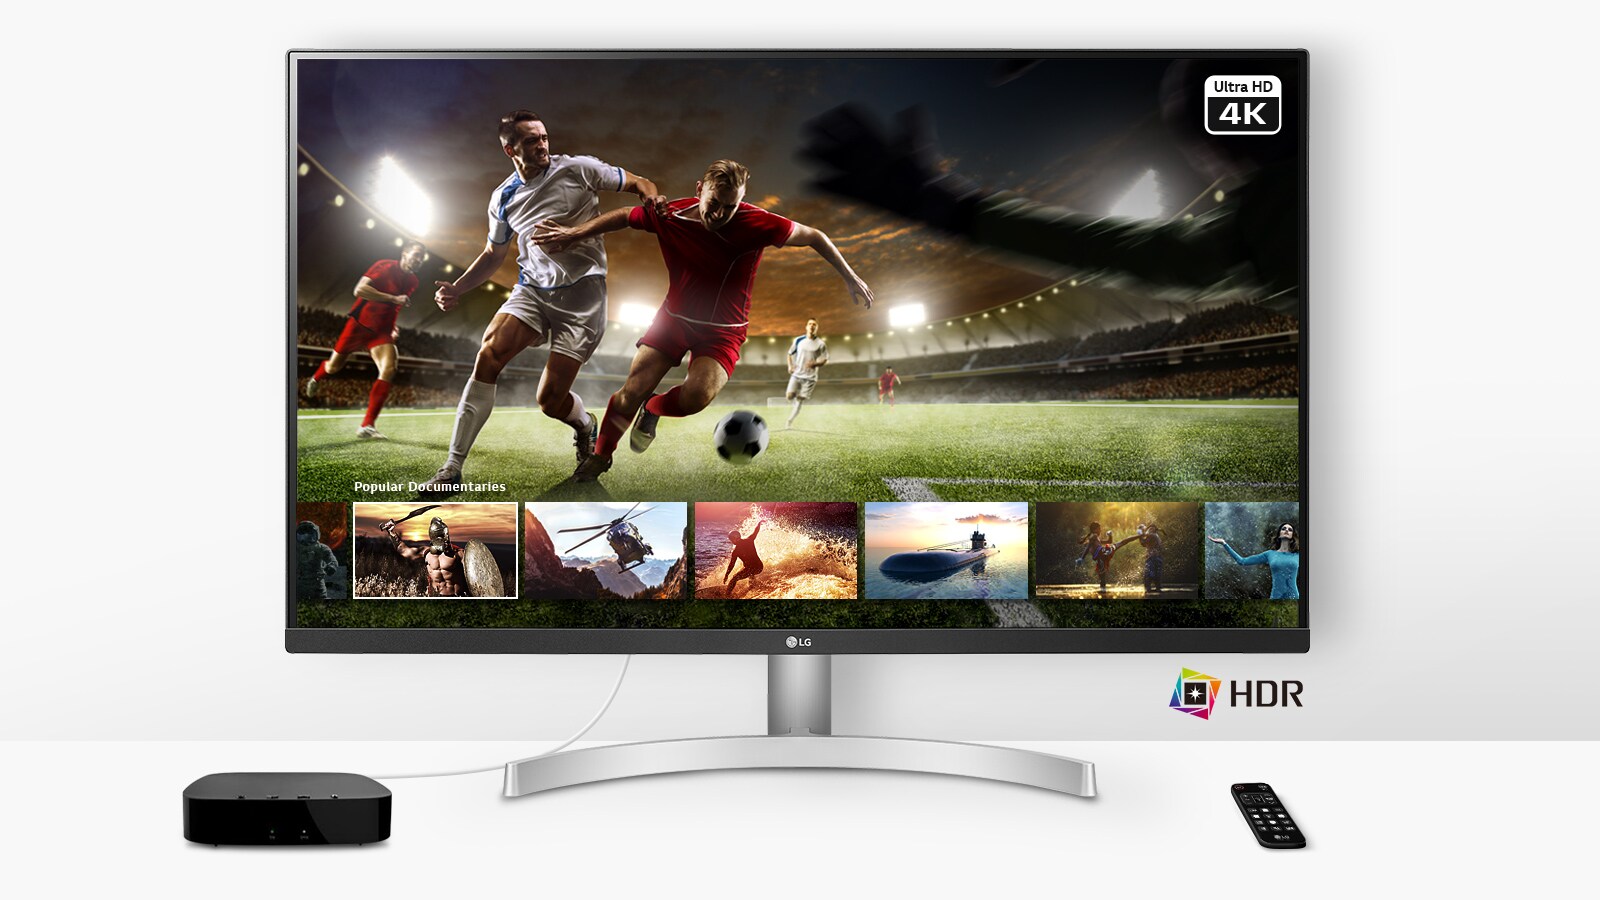 משחק כדורגל בשידור חי באיכות Ultra HD 4K HDR דרך שירות ההזרמה